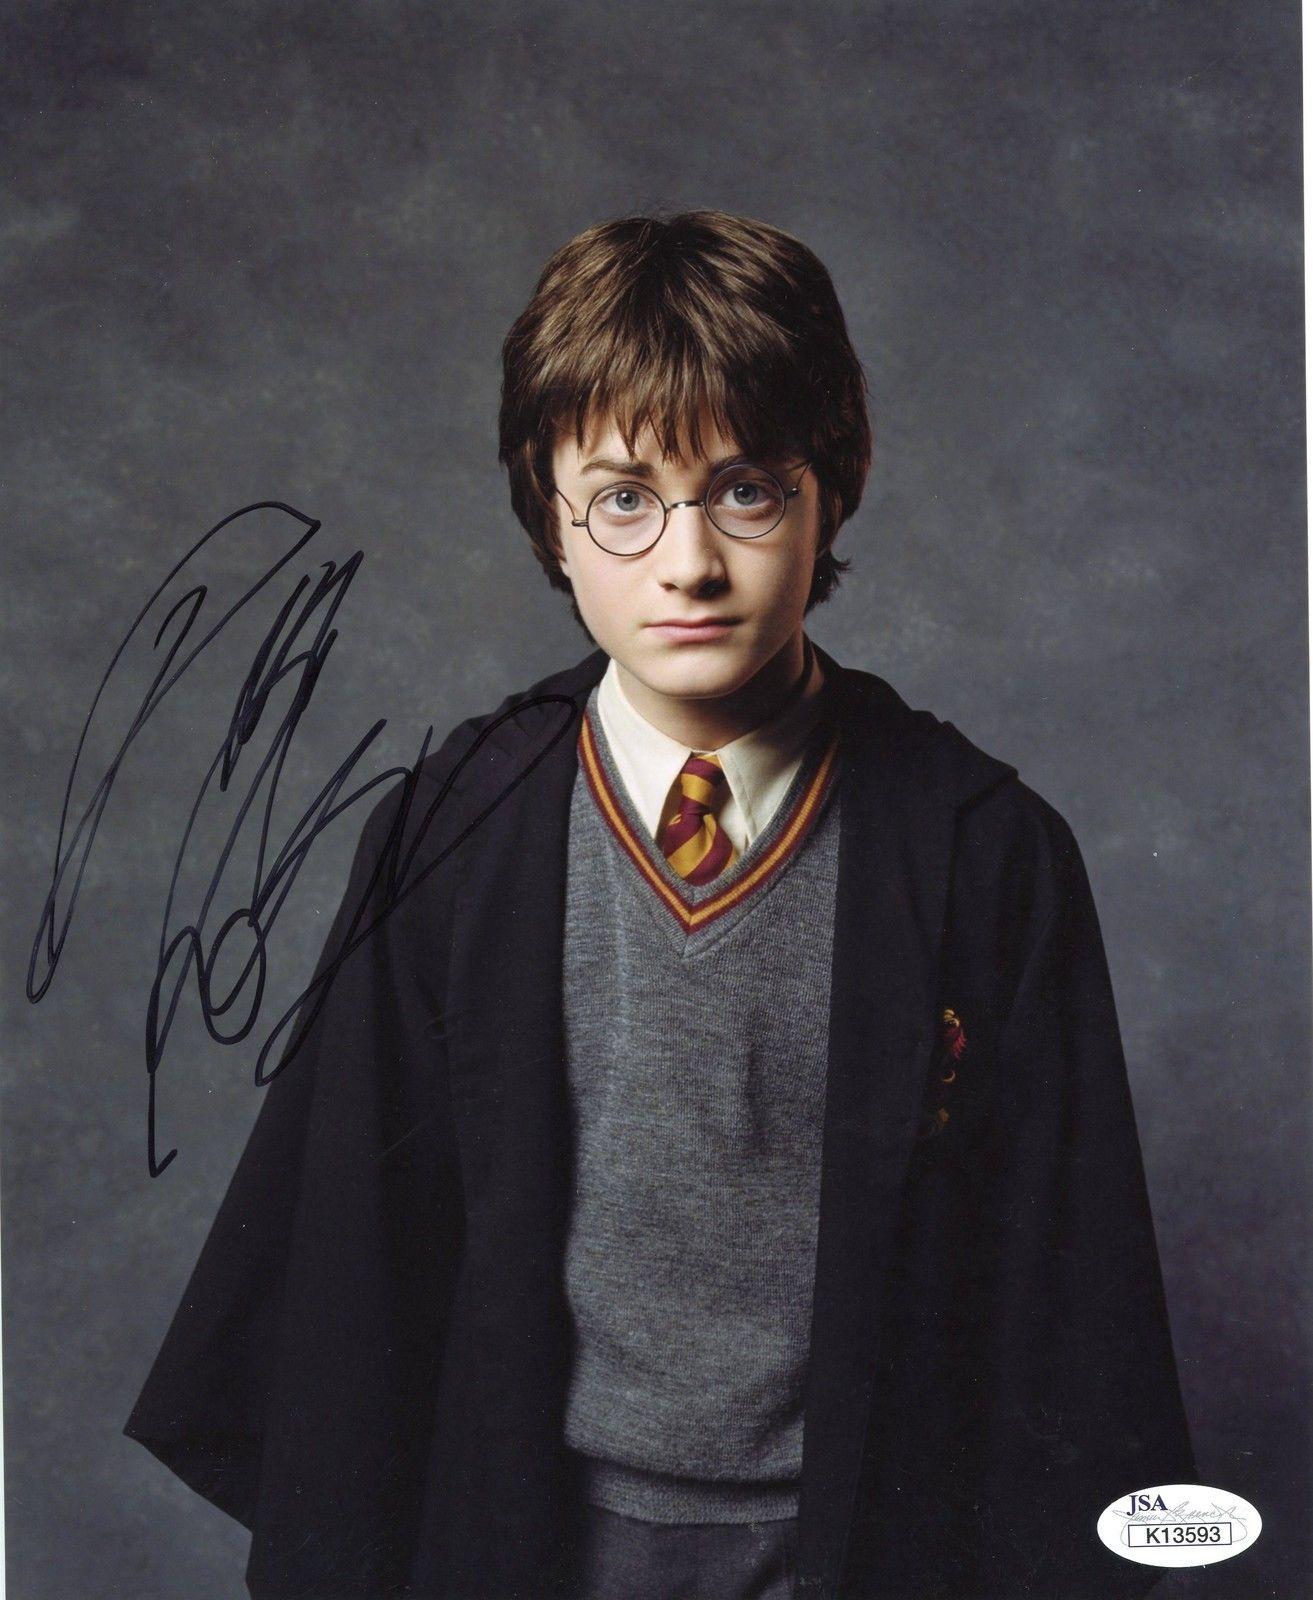 Daniel Radcliffe Autograph Signed Photo Print 